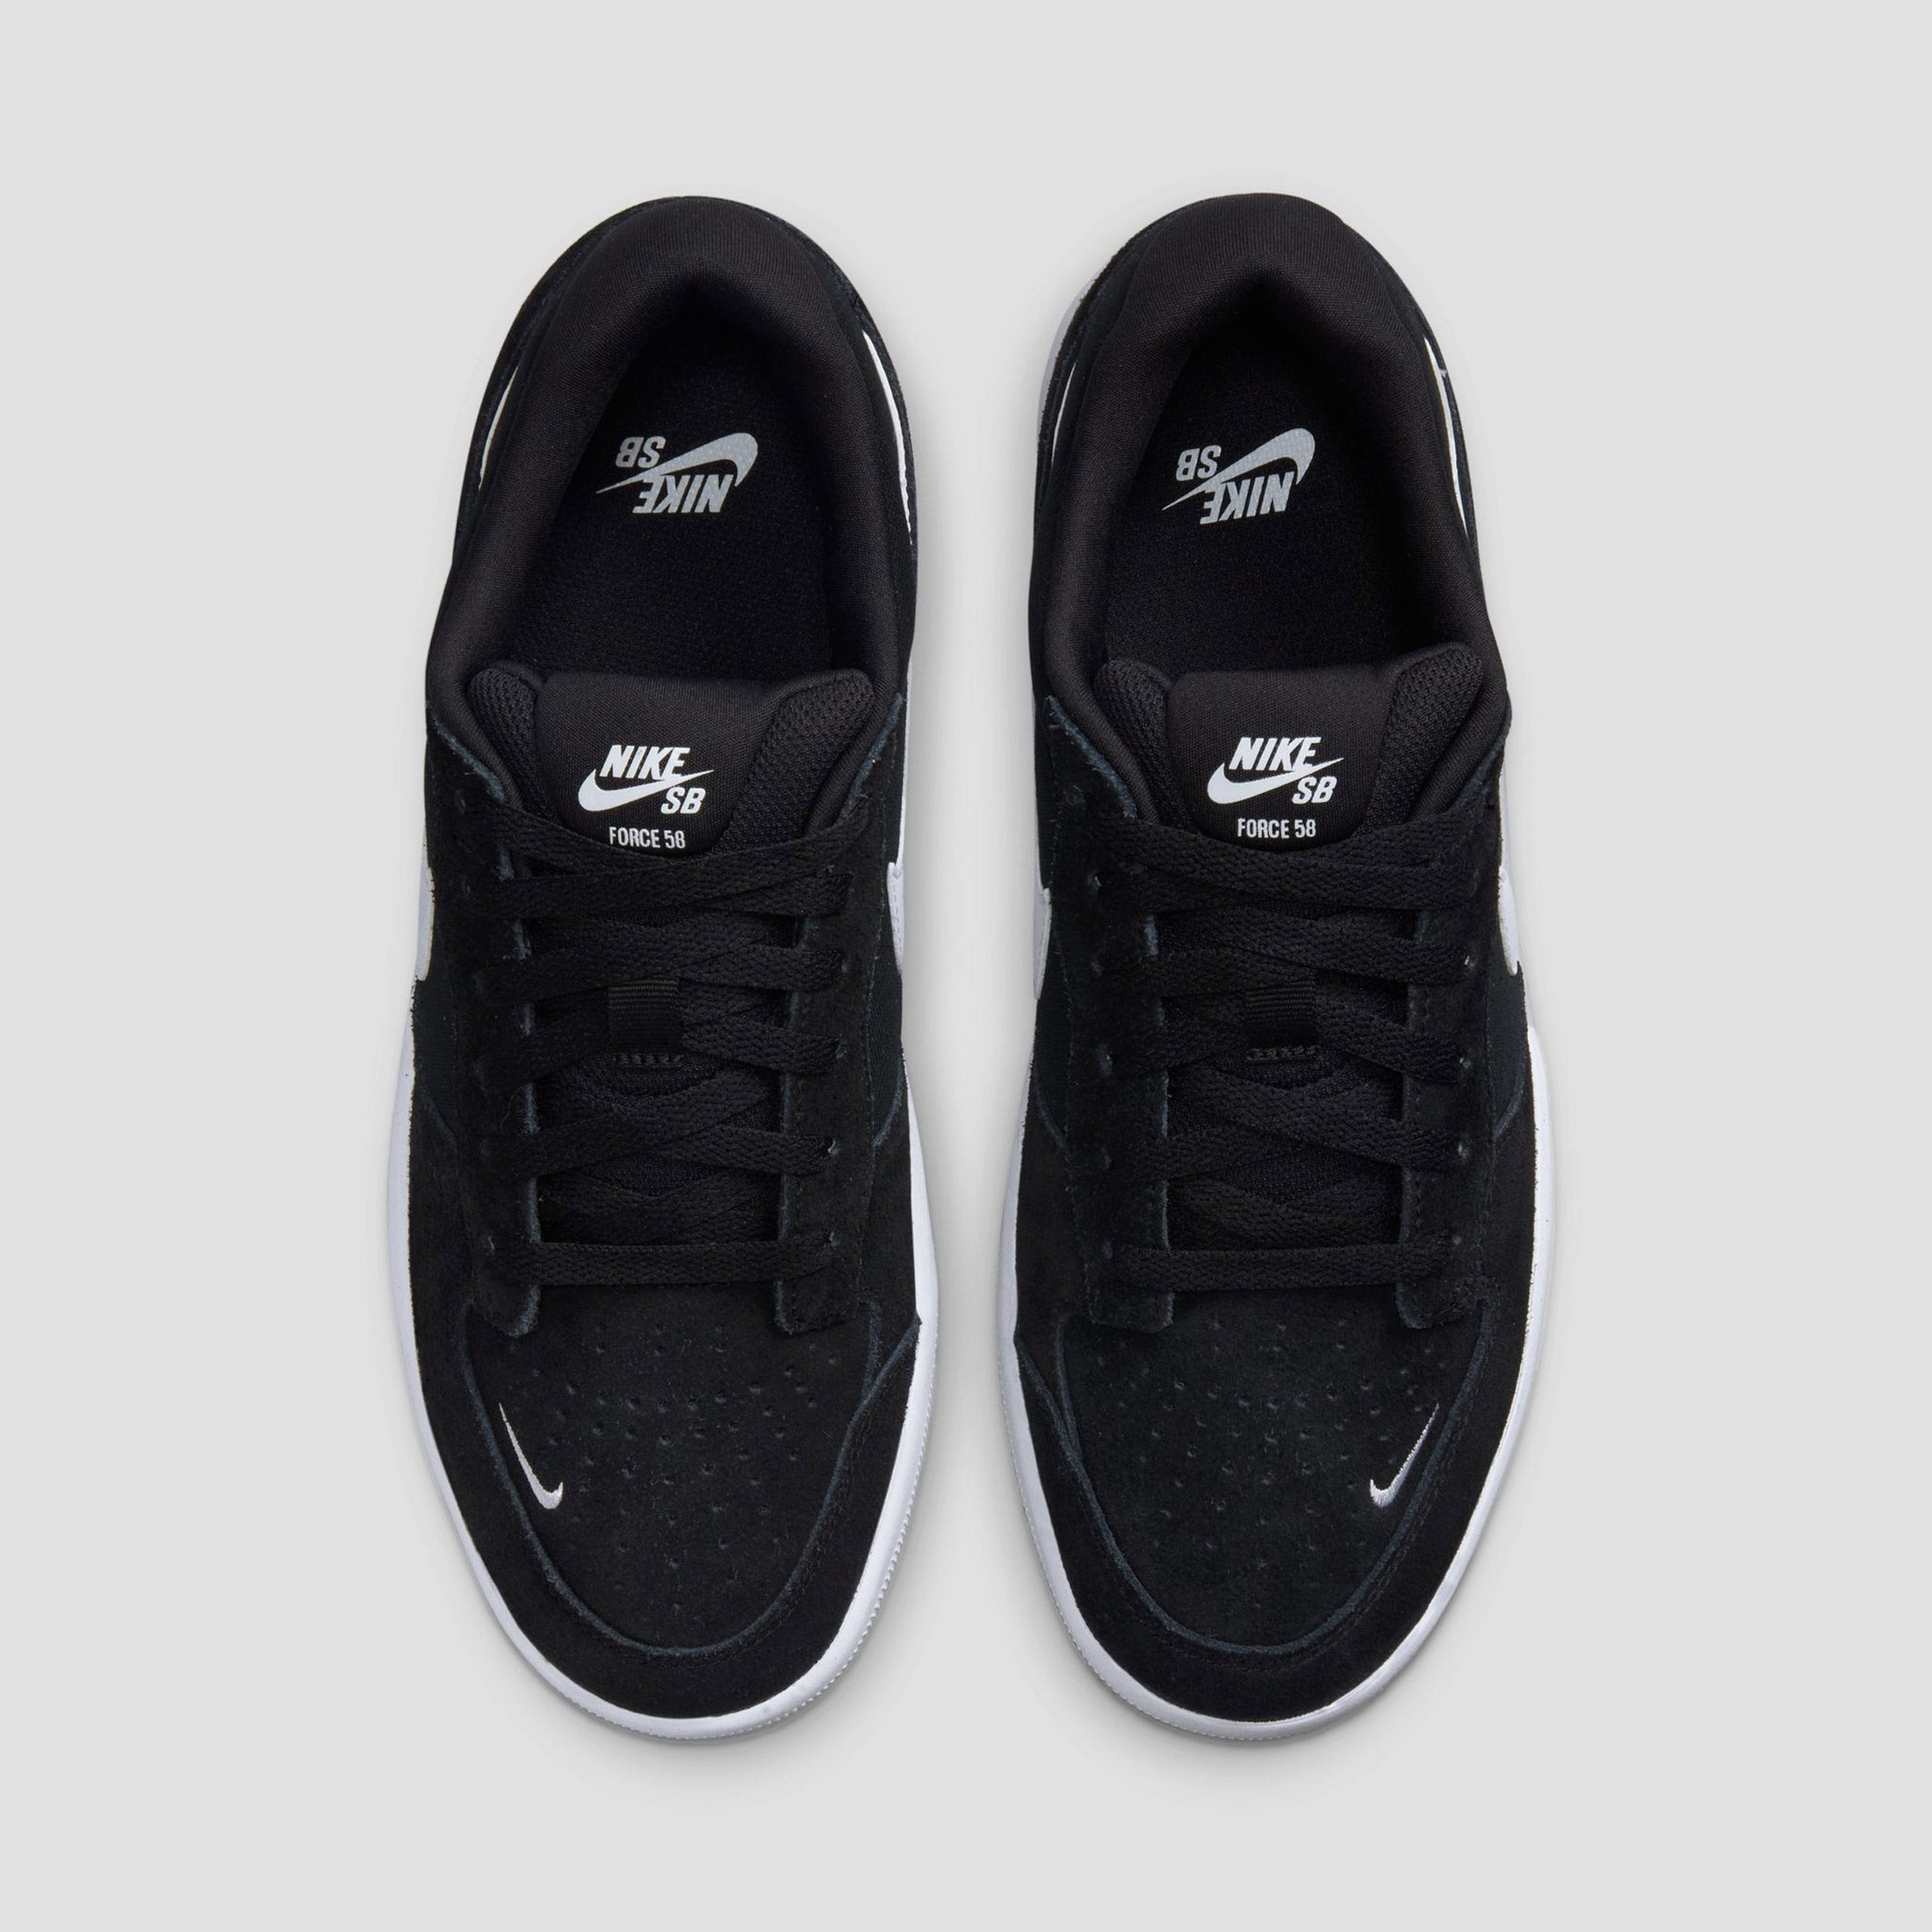 Nike SB Force 58 Skate Shoes Black White Black